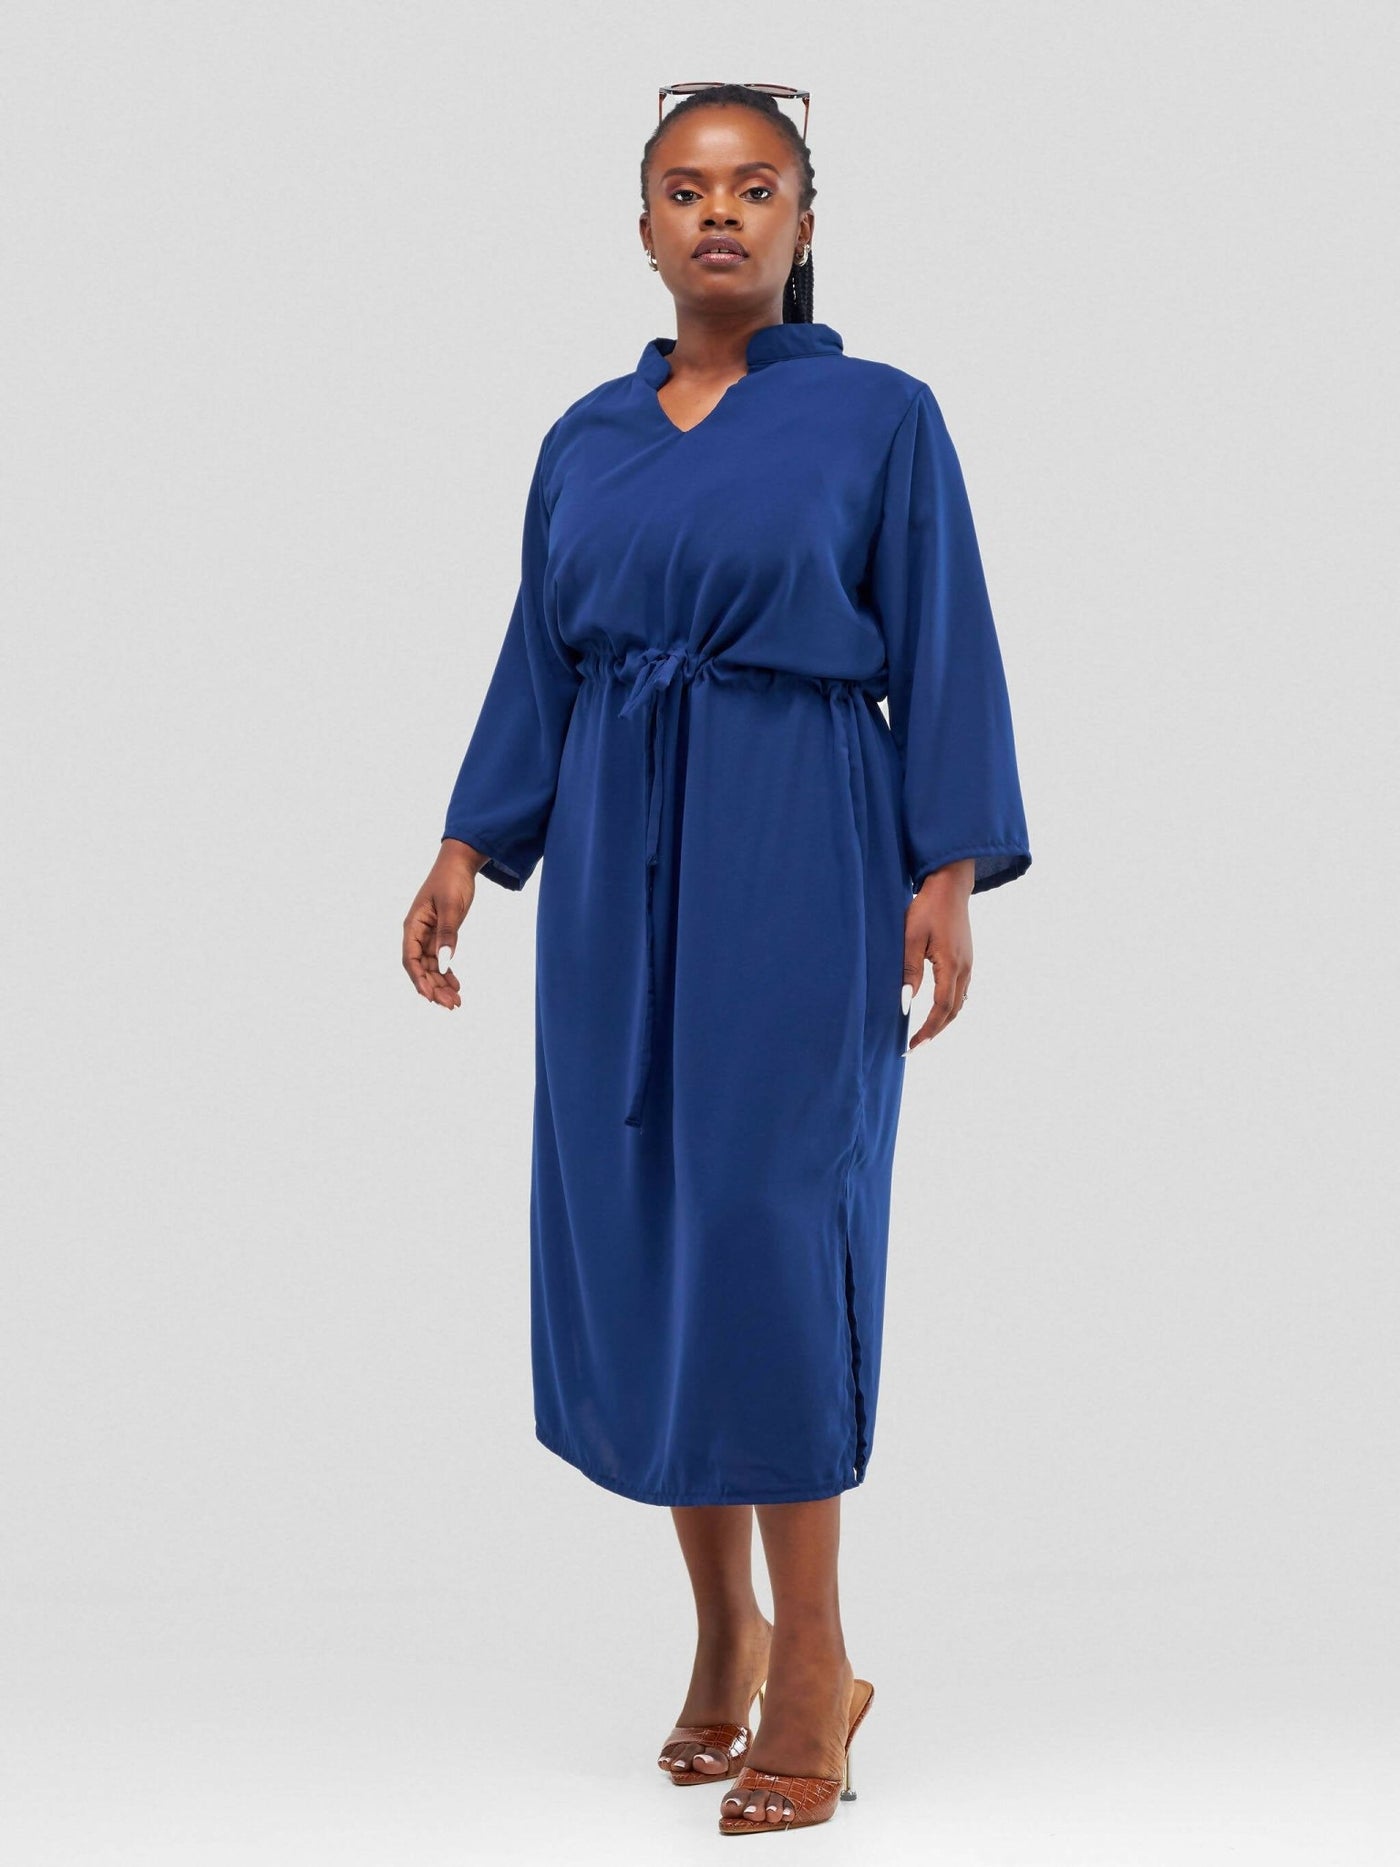 Dewuor Sati Dress - Navy Blue - Shopzetu